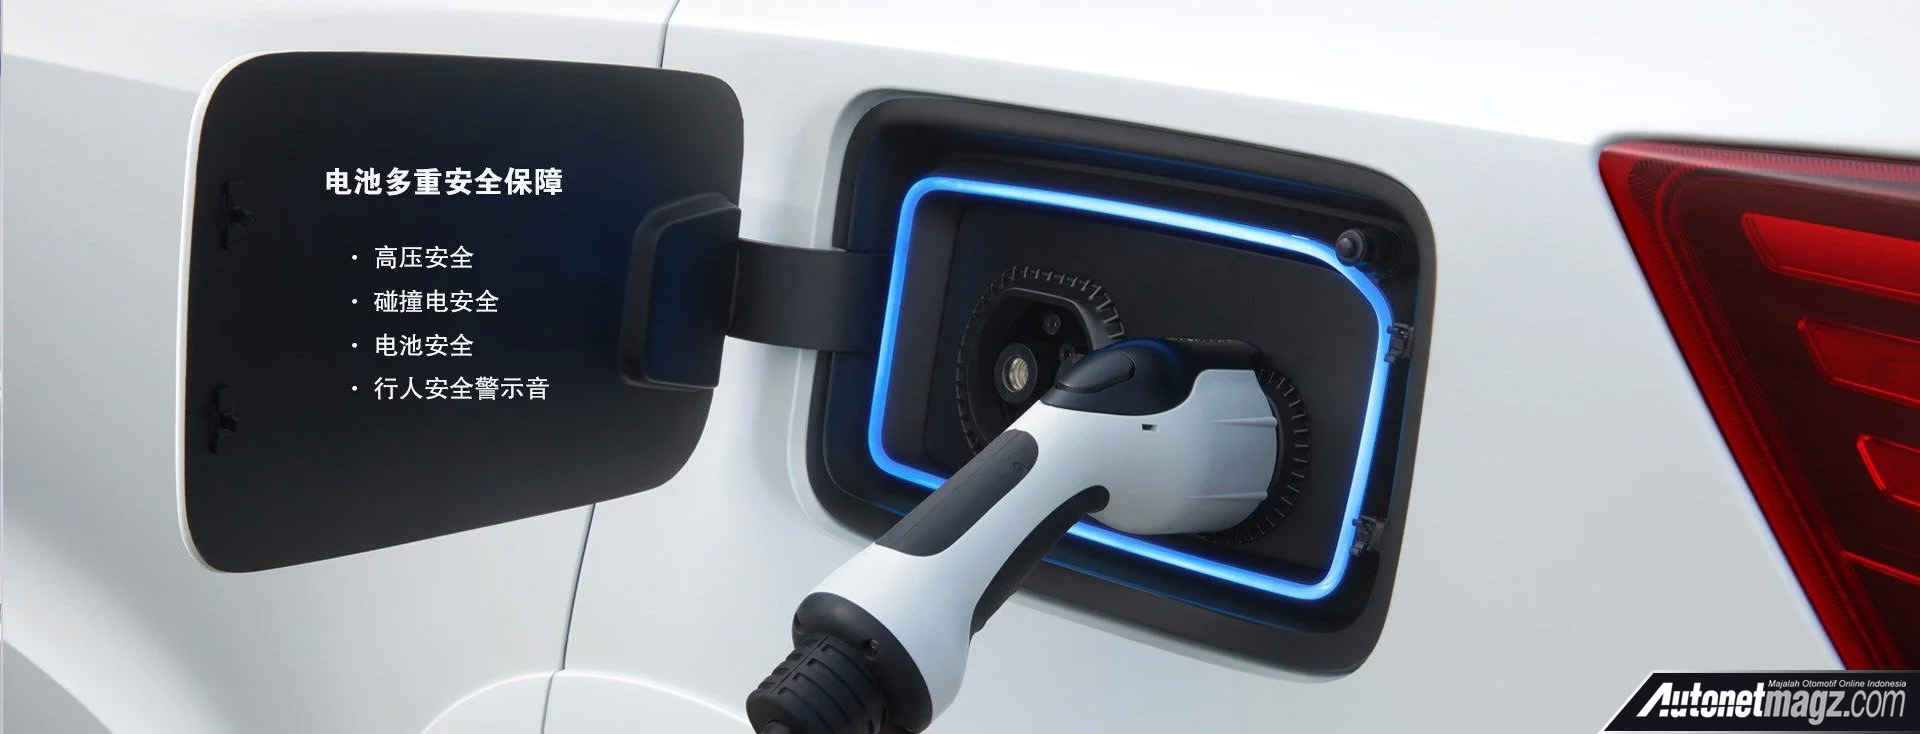 Berita, Lubang charge Borgward BXi7: Borgward Perkenalkan SUV Electric BXi7, Mampu Tempuh 375 km